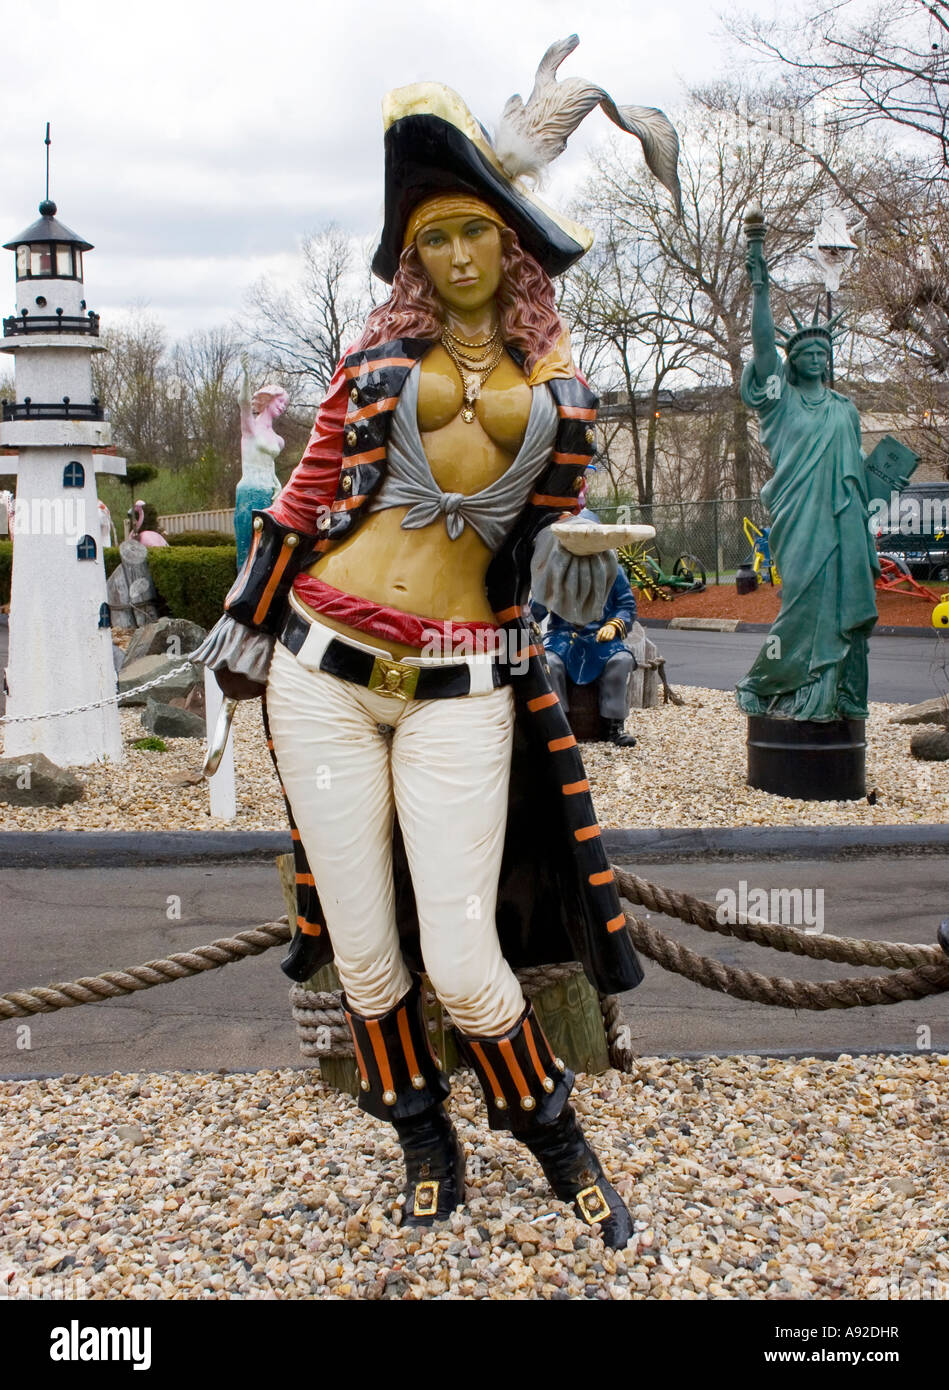 Pirata femenino estatua en el lavado de auto clásico en Cromwell Connecticut Foto de stock